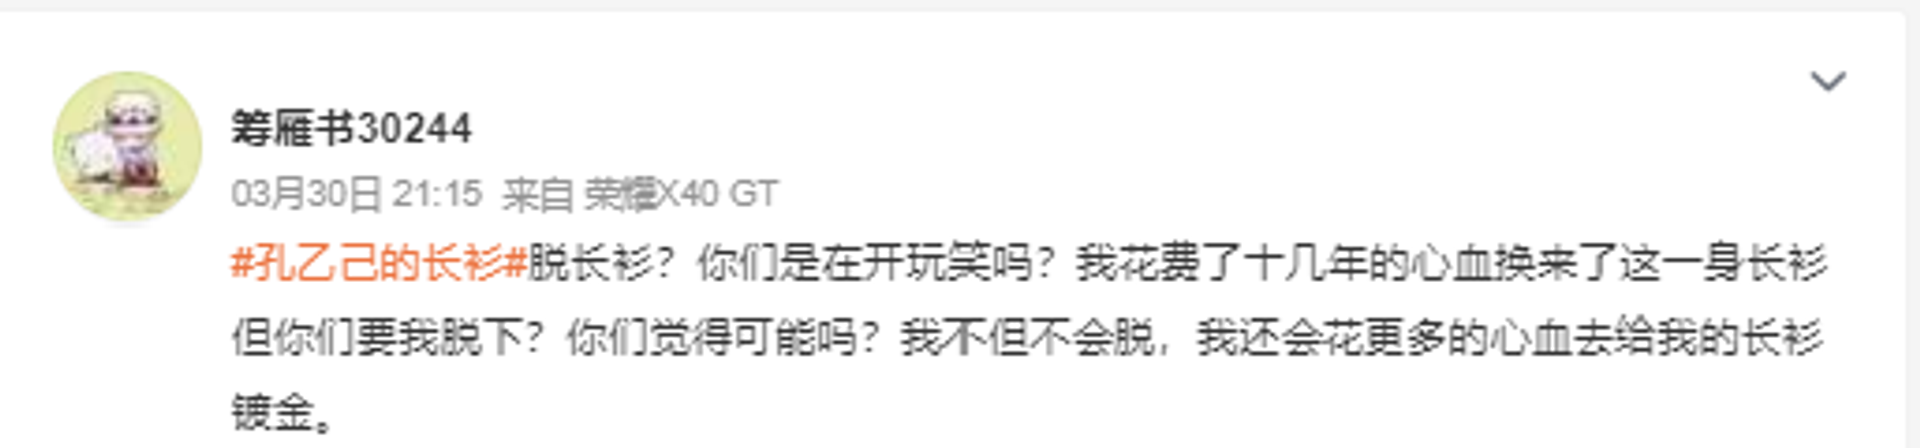 Weibo post on Kongyiji